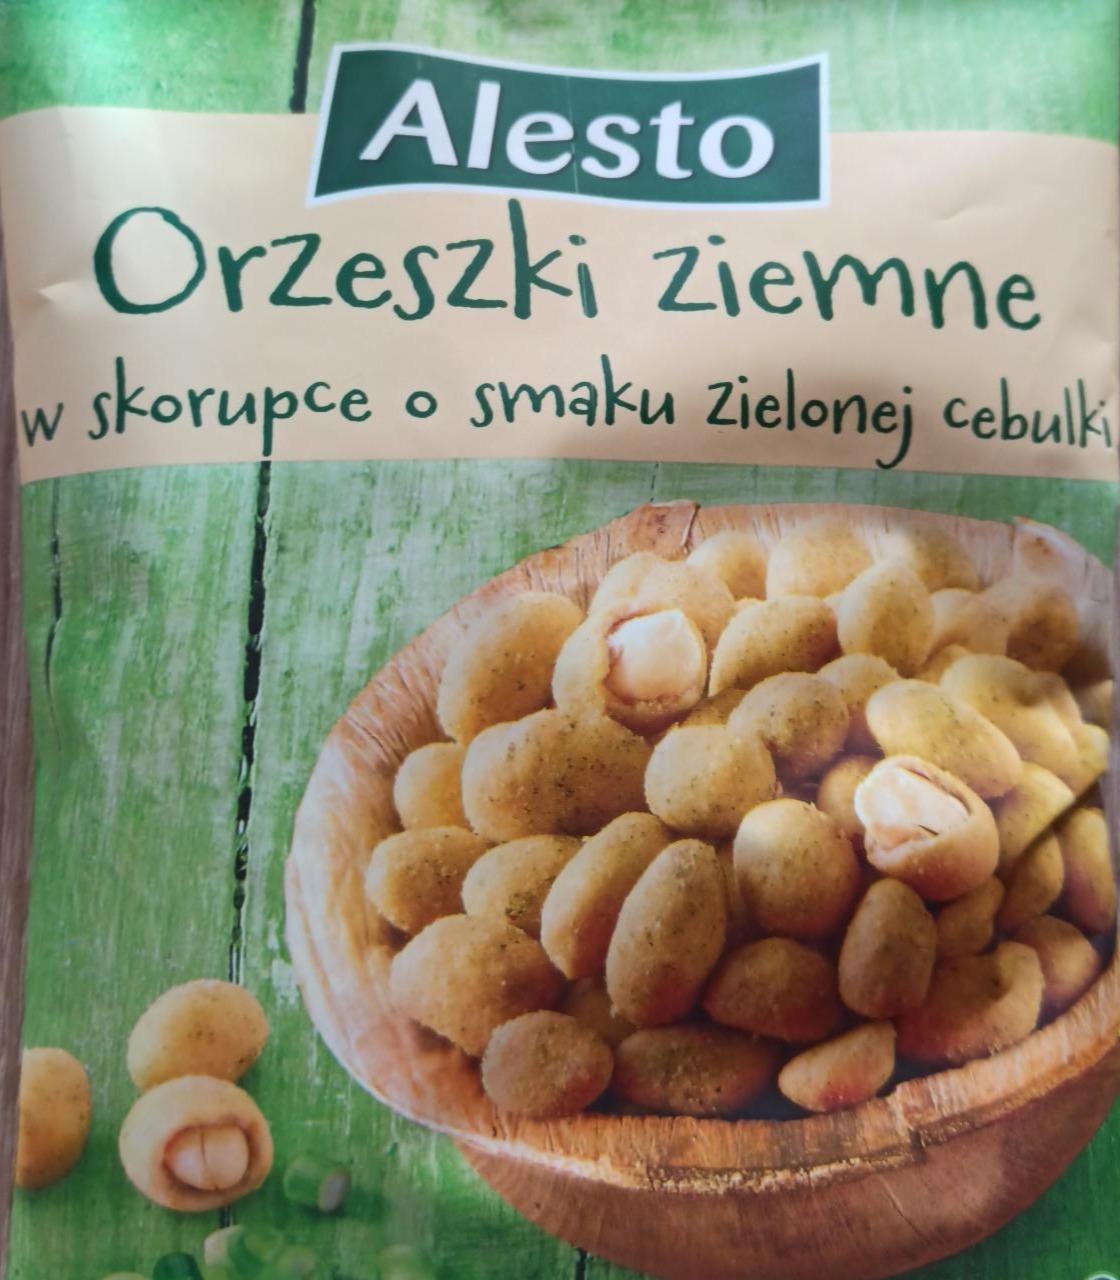 Zdjęcia - Orzeszki ziemne w skorupce o smaku zielonej cebulki alesto